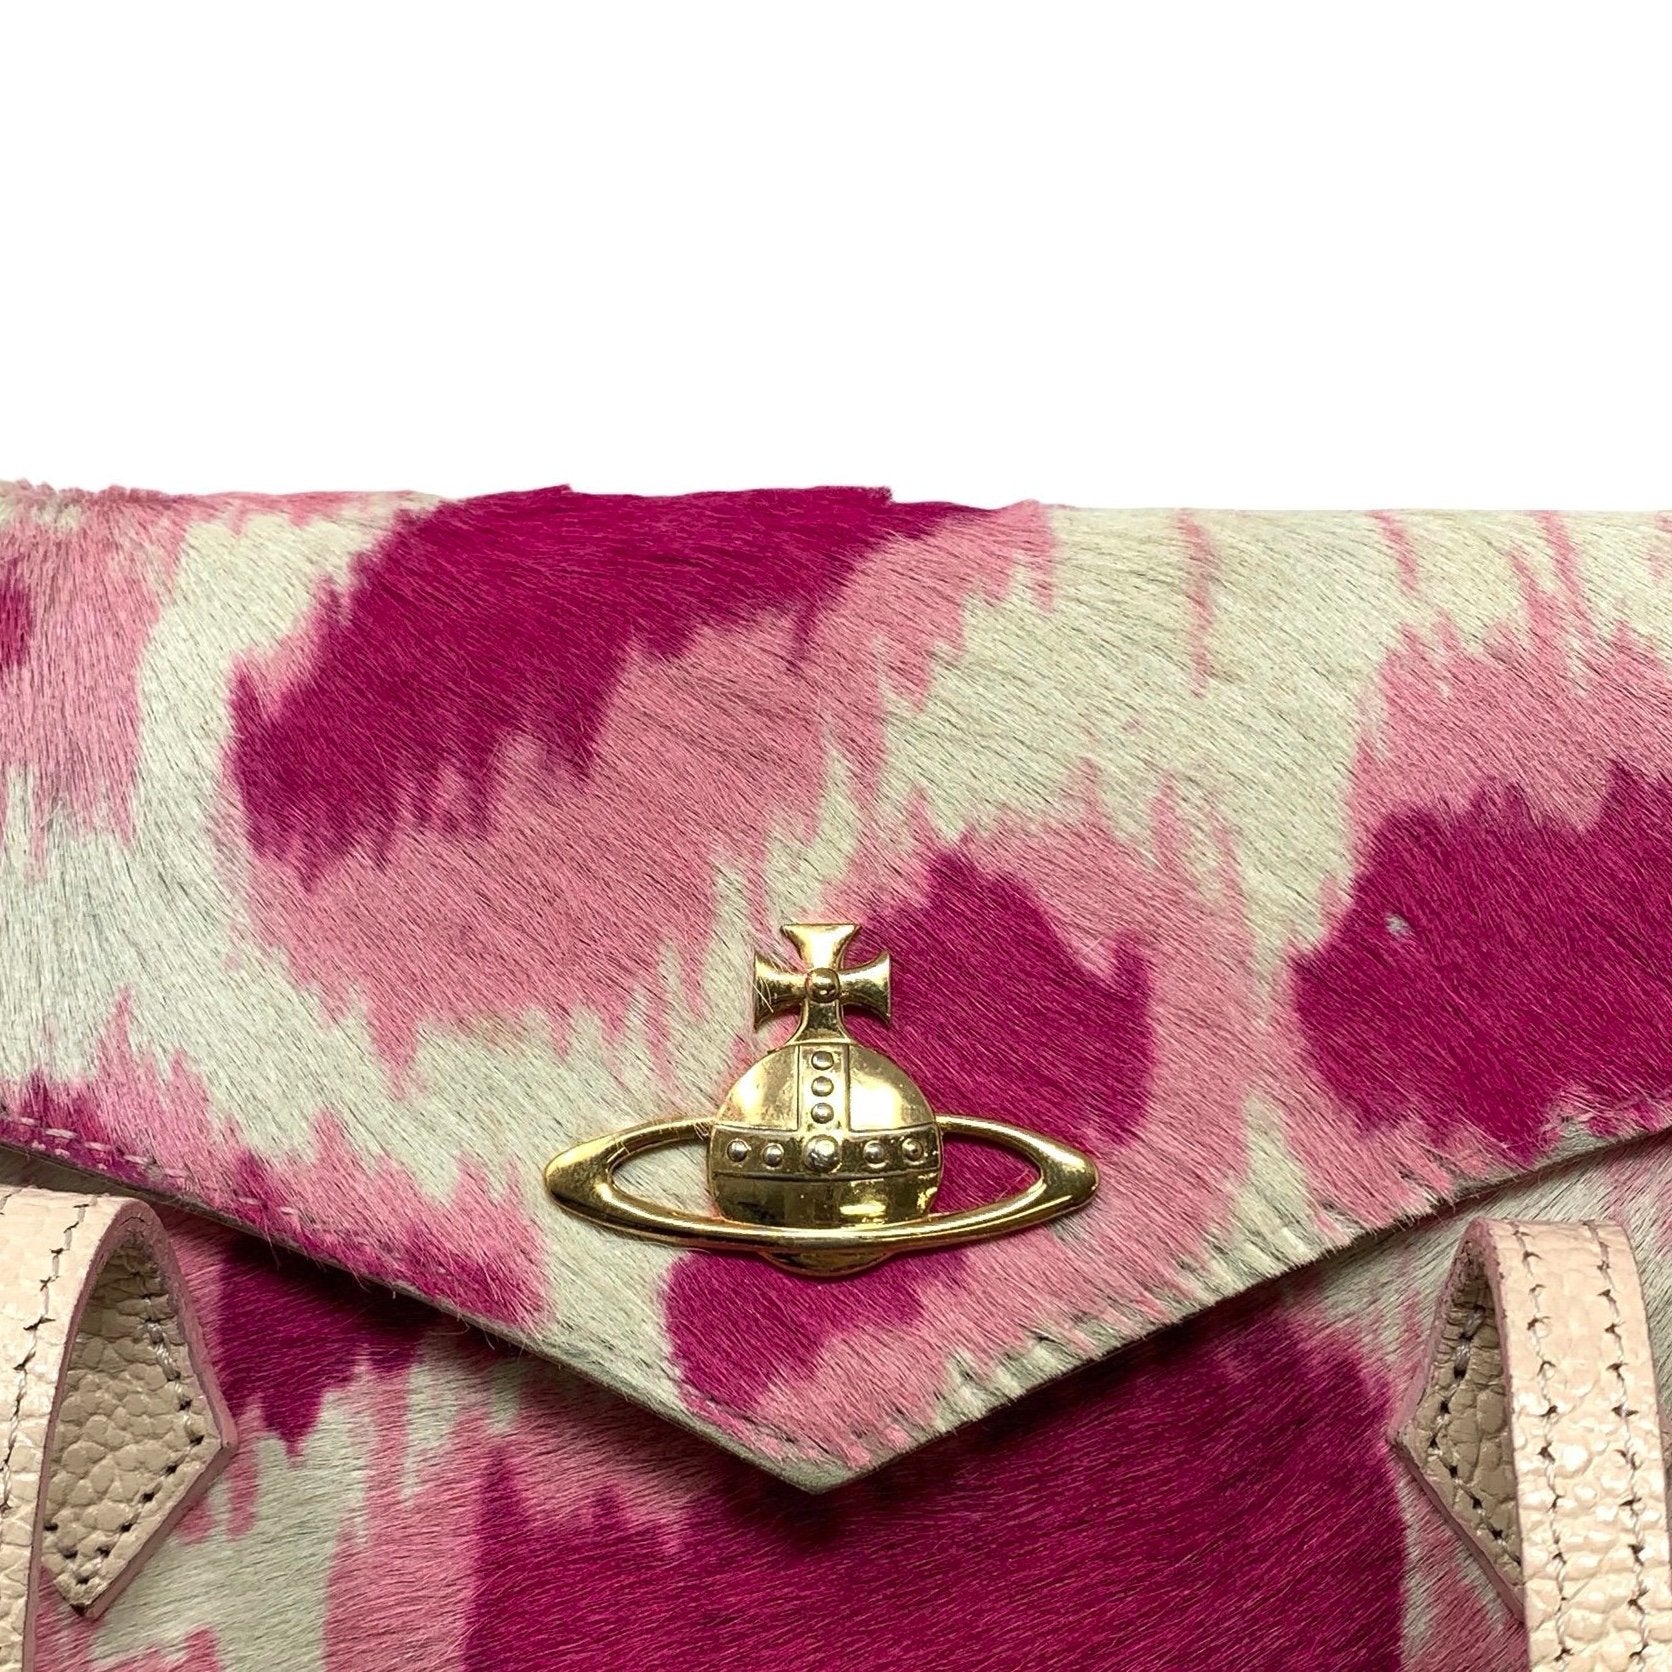 Vivienne Westwood Hot Pink Calf Hair Top Handle - Handbags